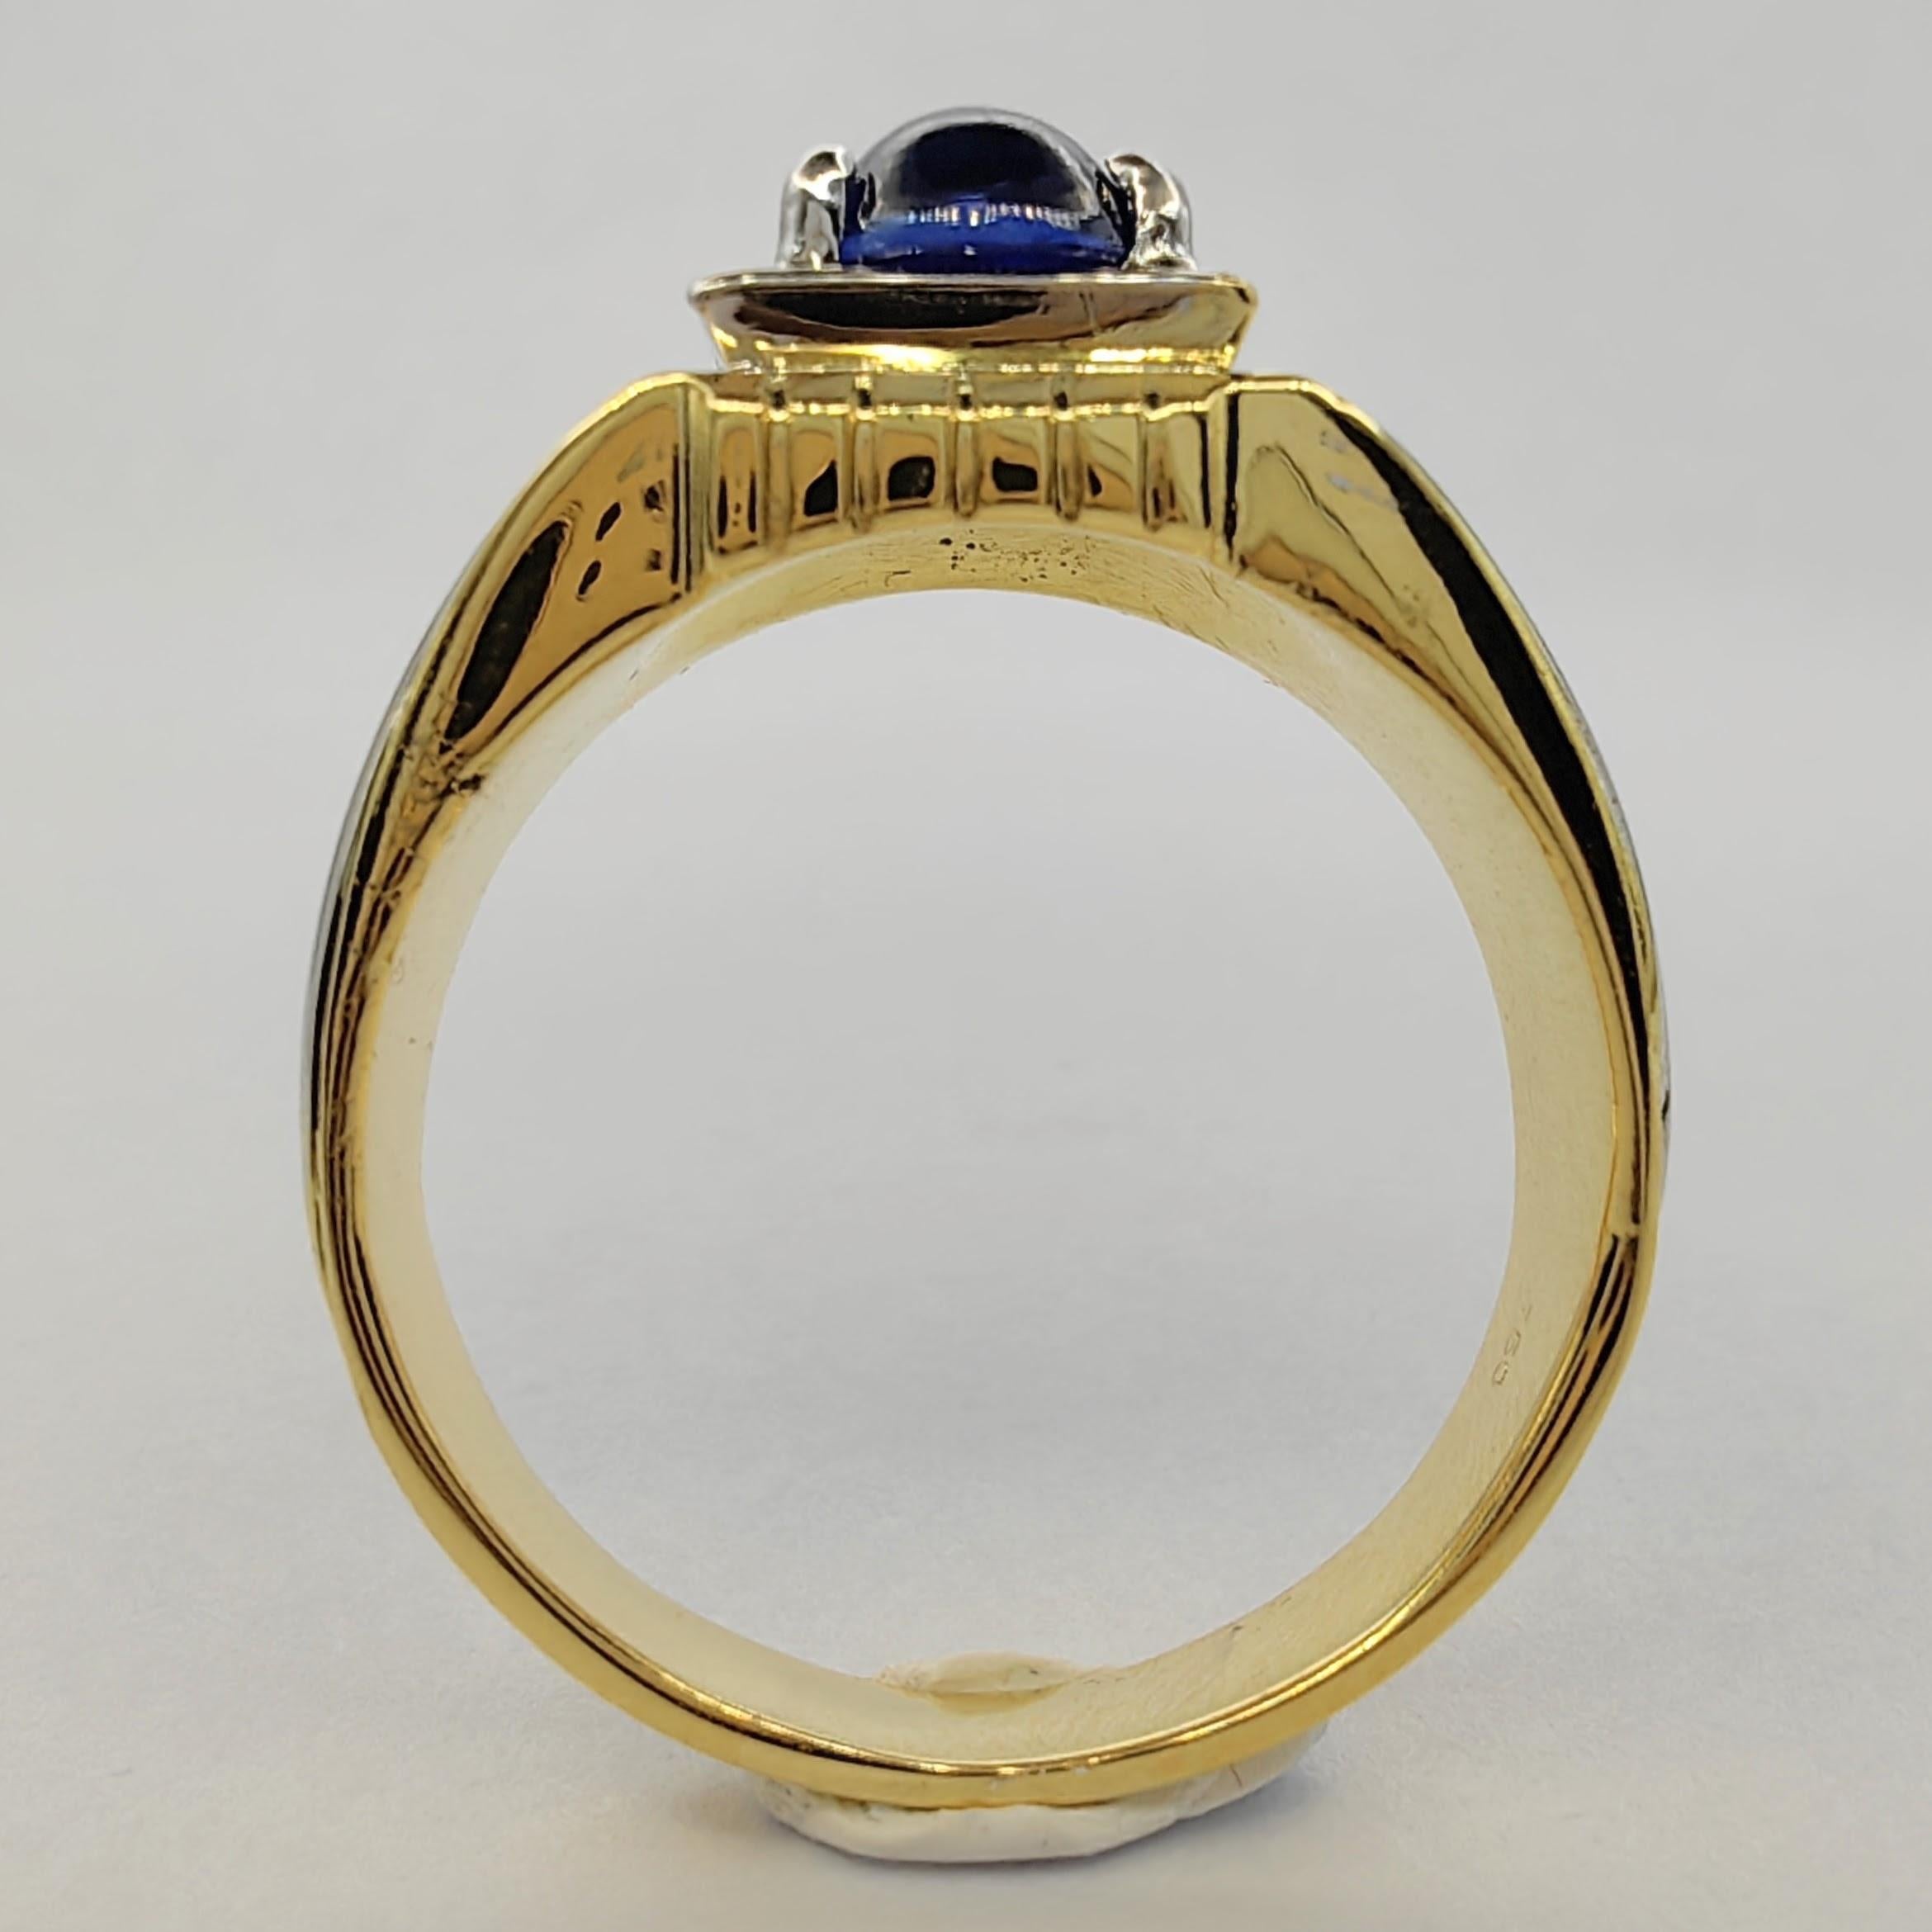 blue sapphire ring design for men